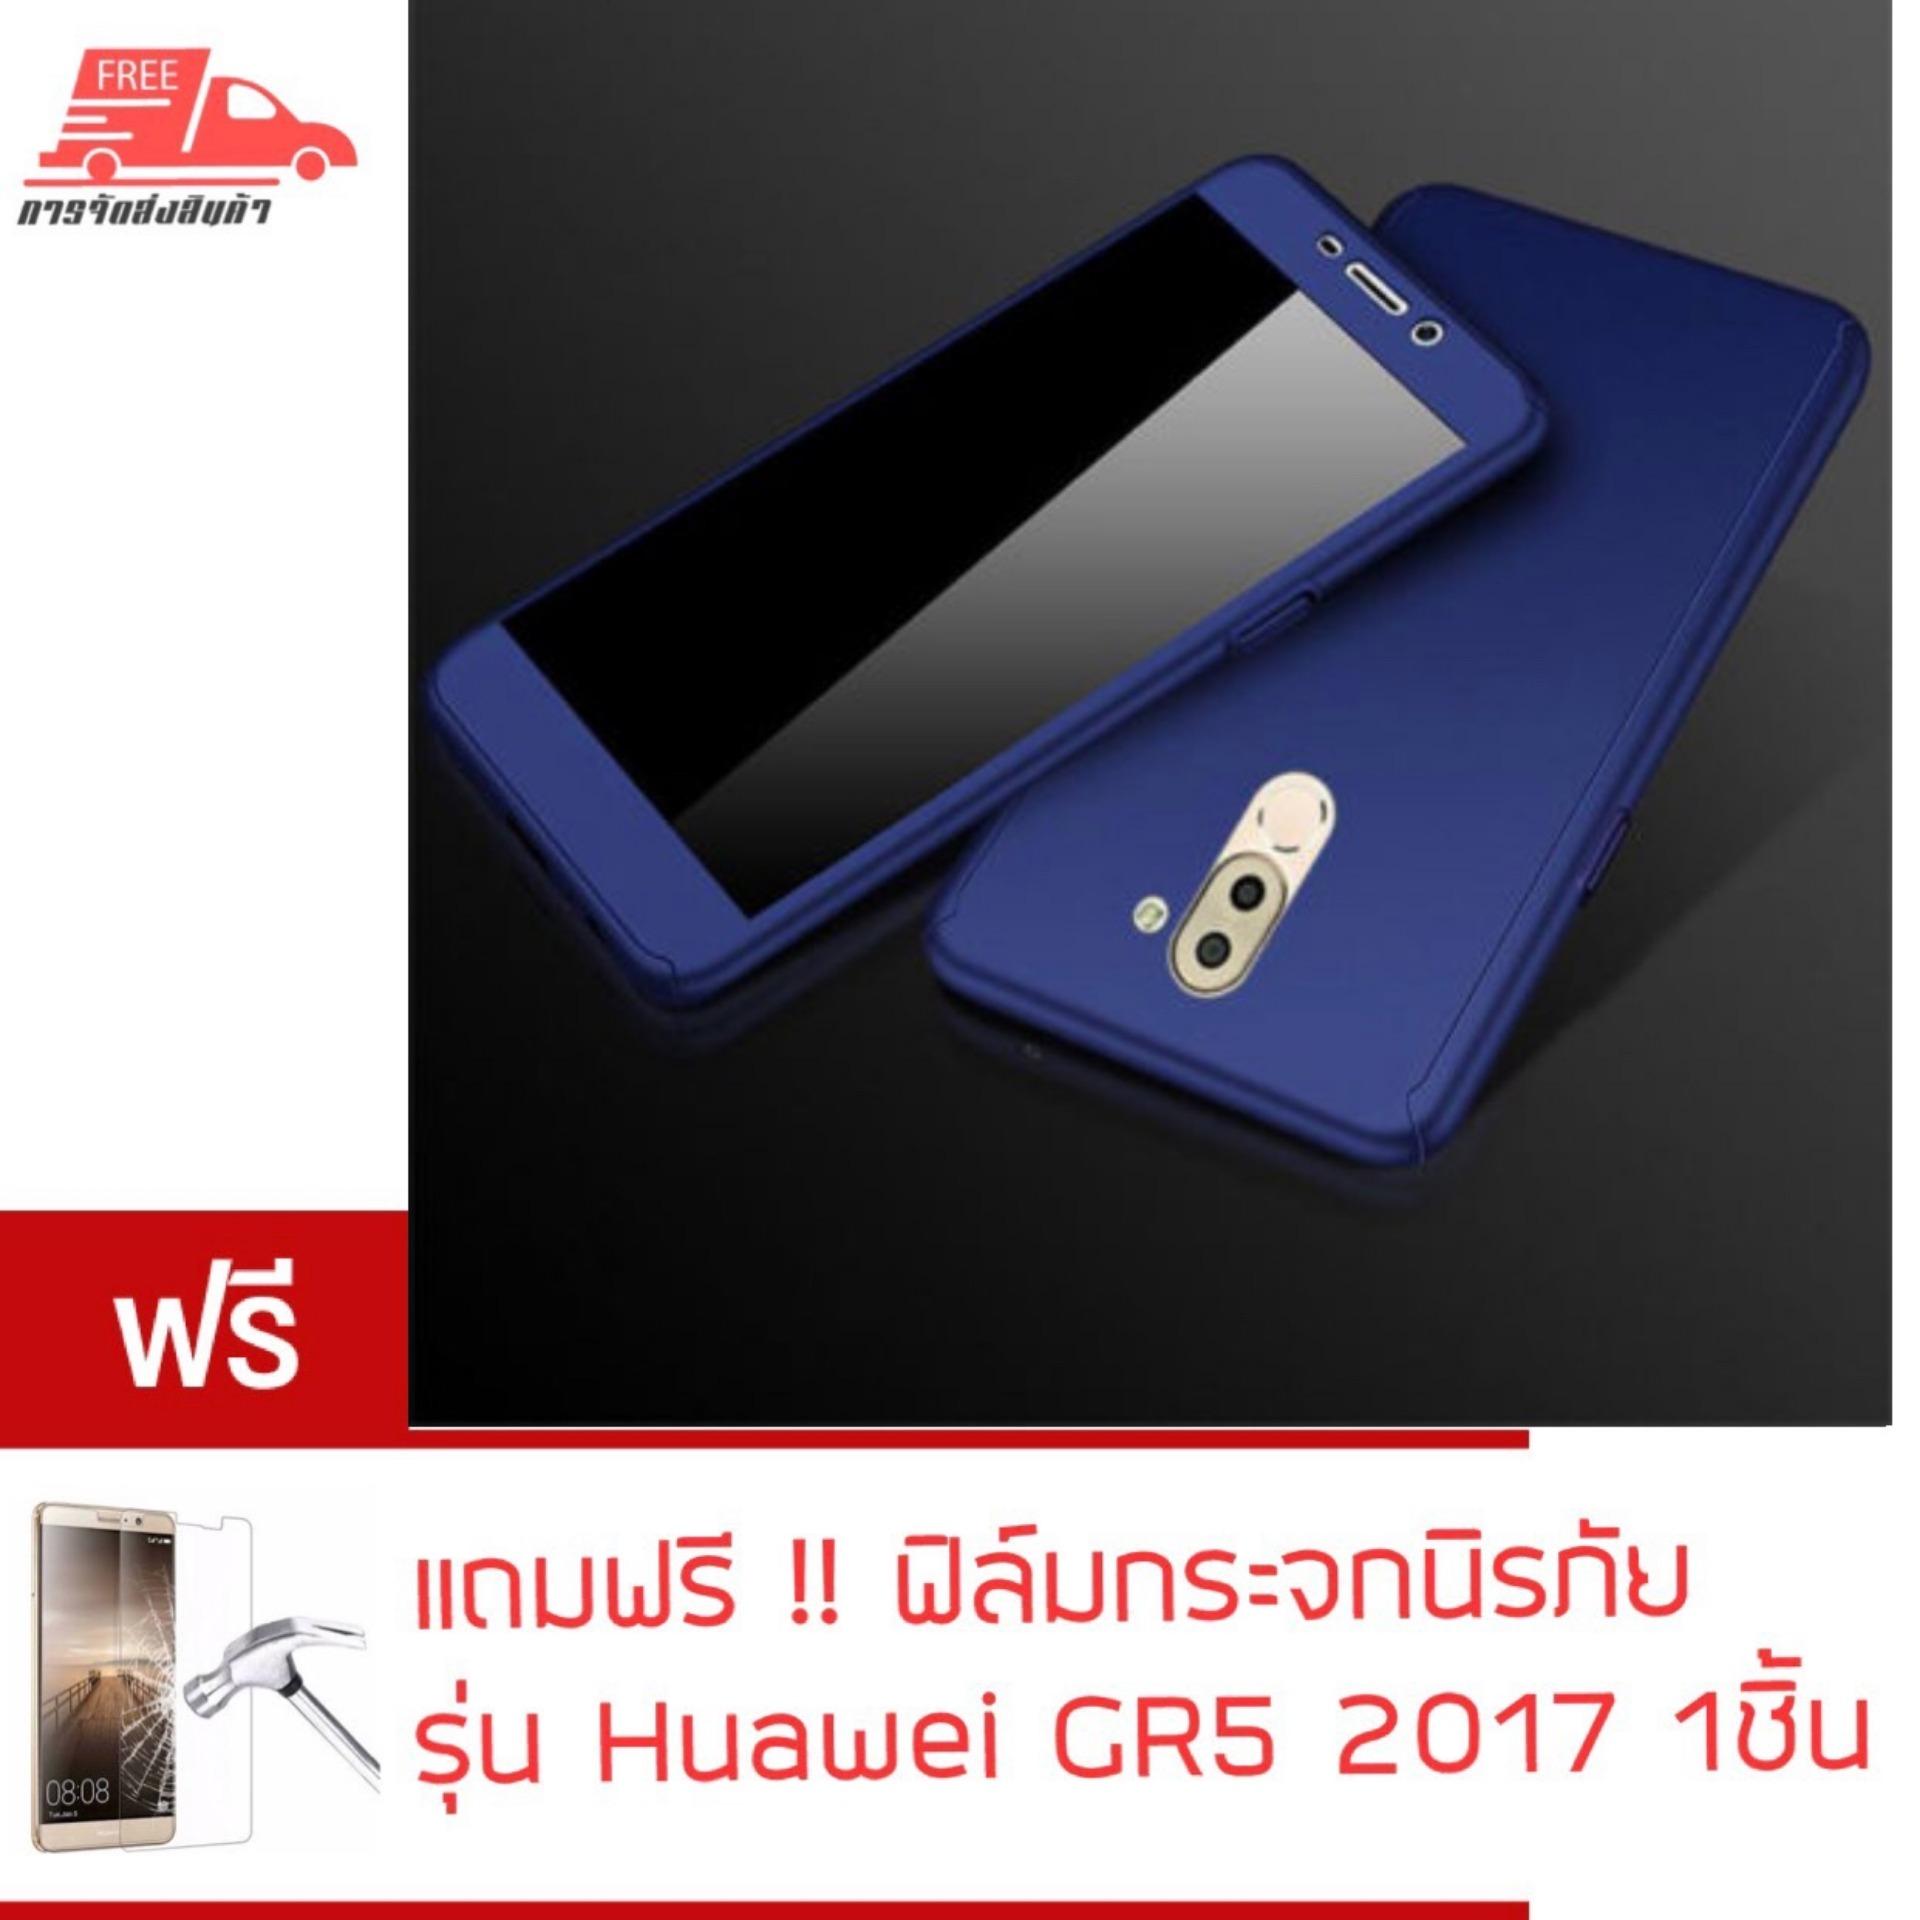 พร้อมส่ง Case Huawei GR5 2017 เคสหัวเว่ย GR5 2017 เคสประกบ 360 องศา เคสกันกระแทก สวยและบางมาก เคสประกบ สินค้าใหม่